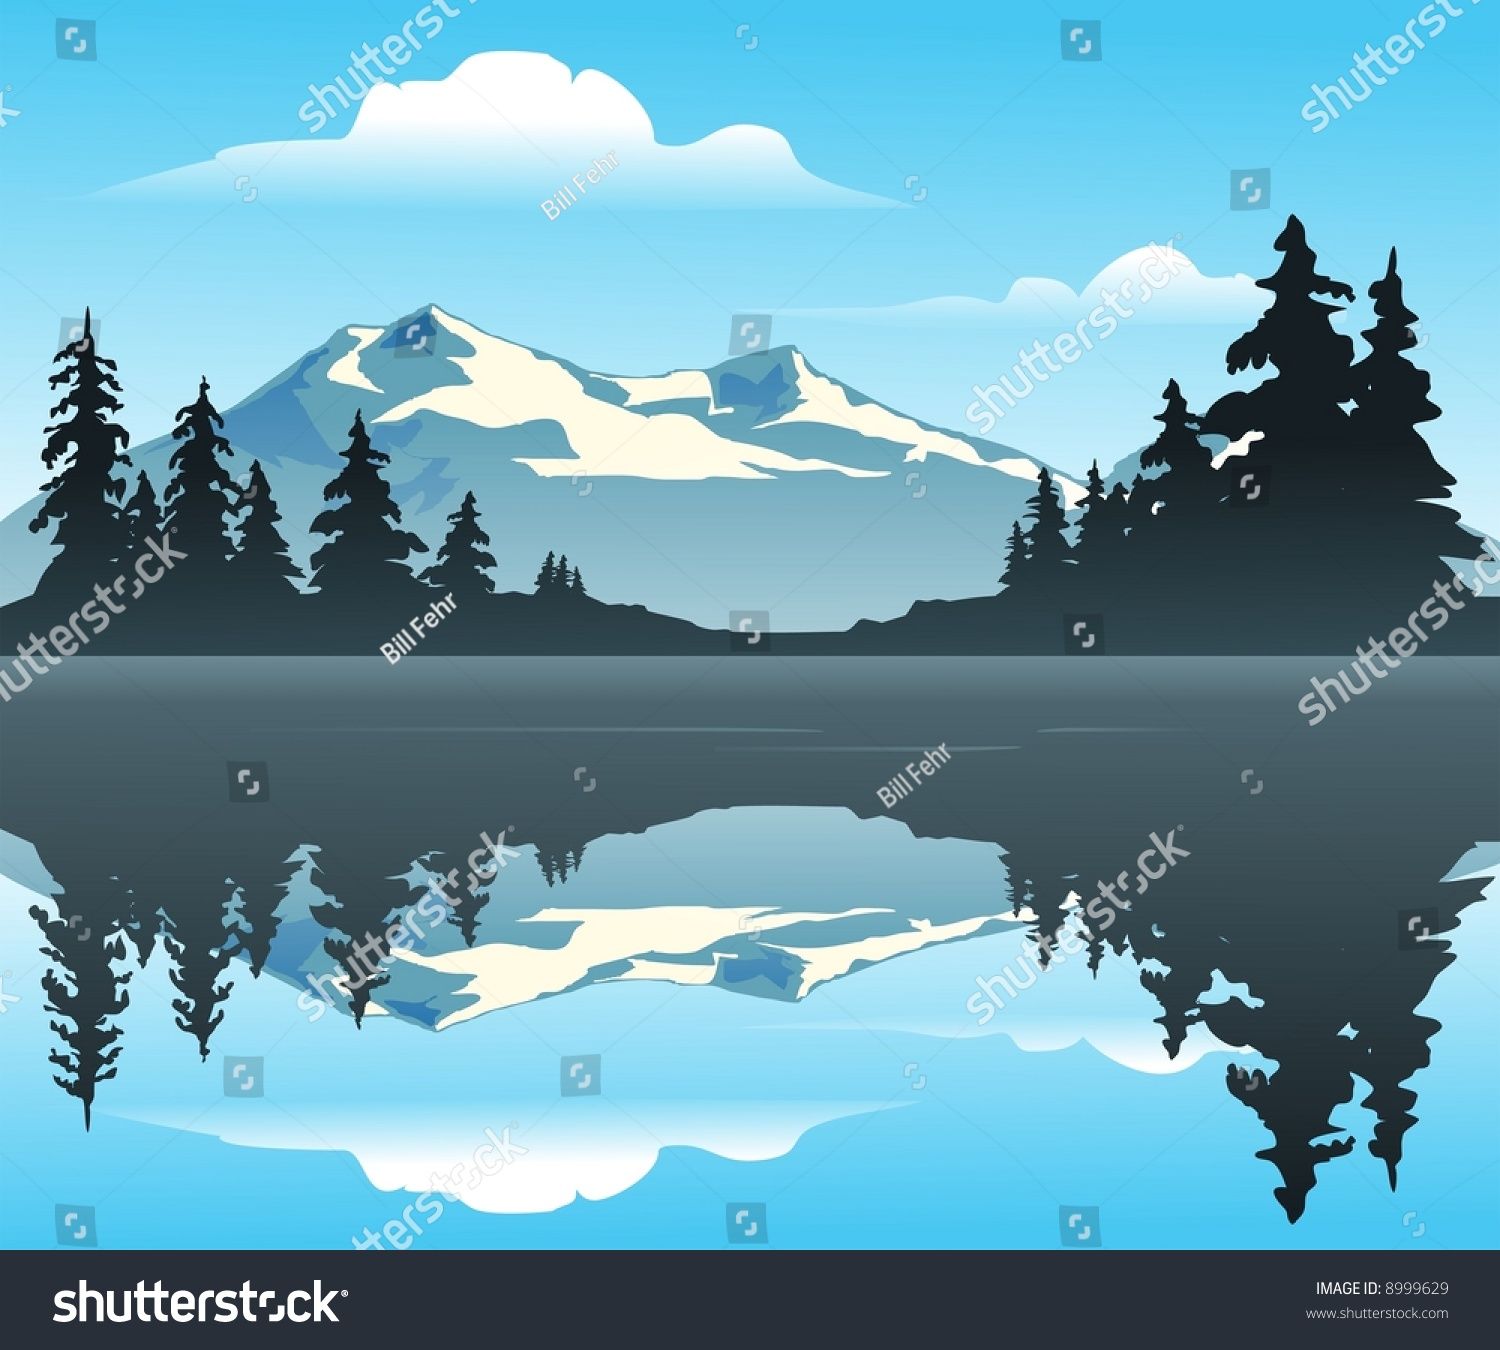 Lake mountain silhouette.